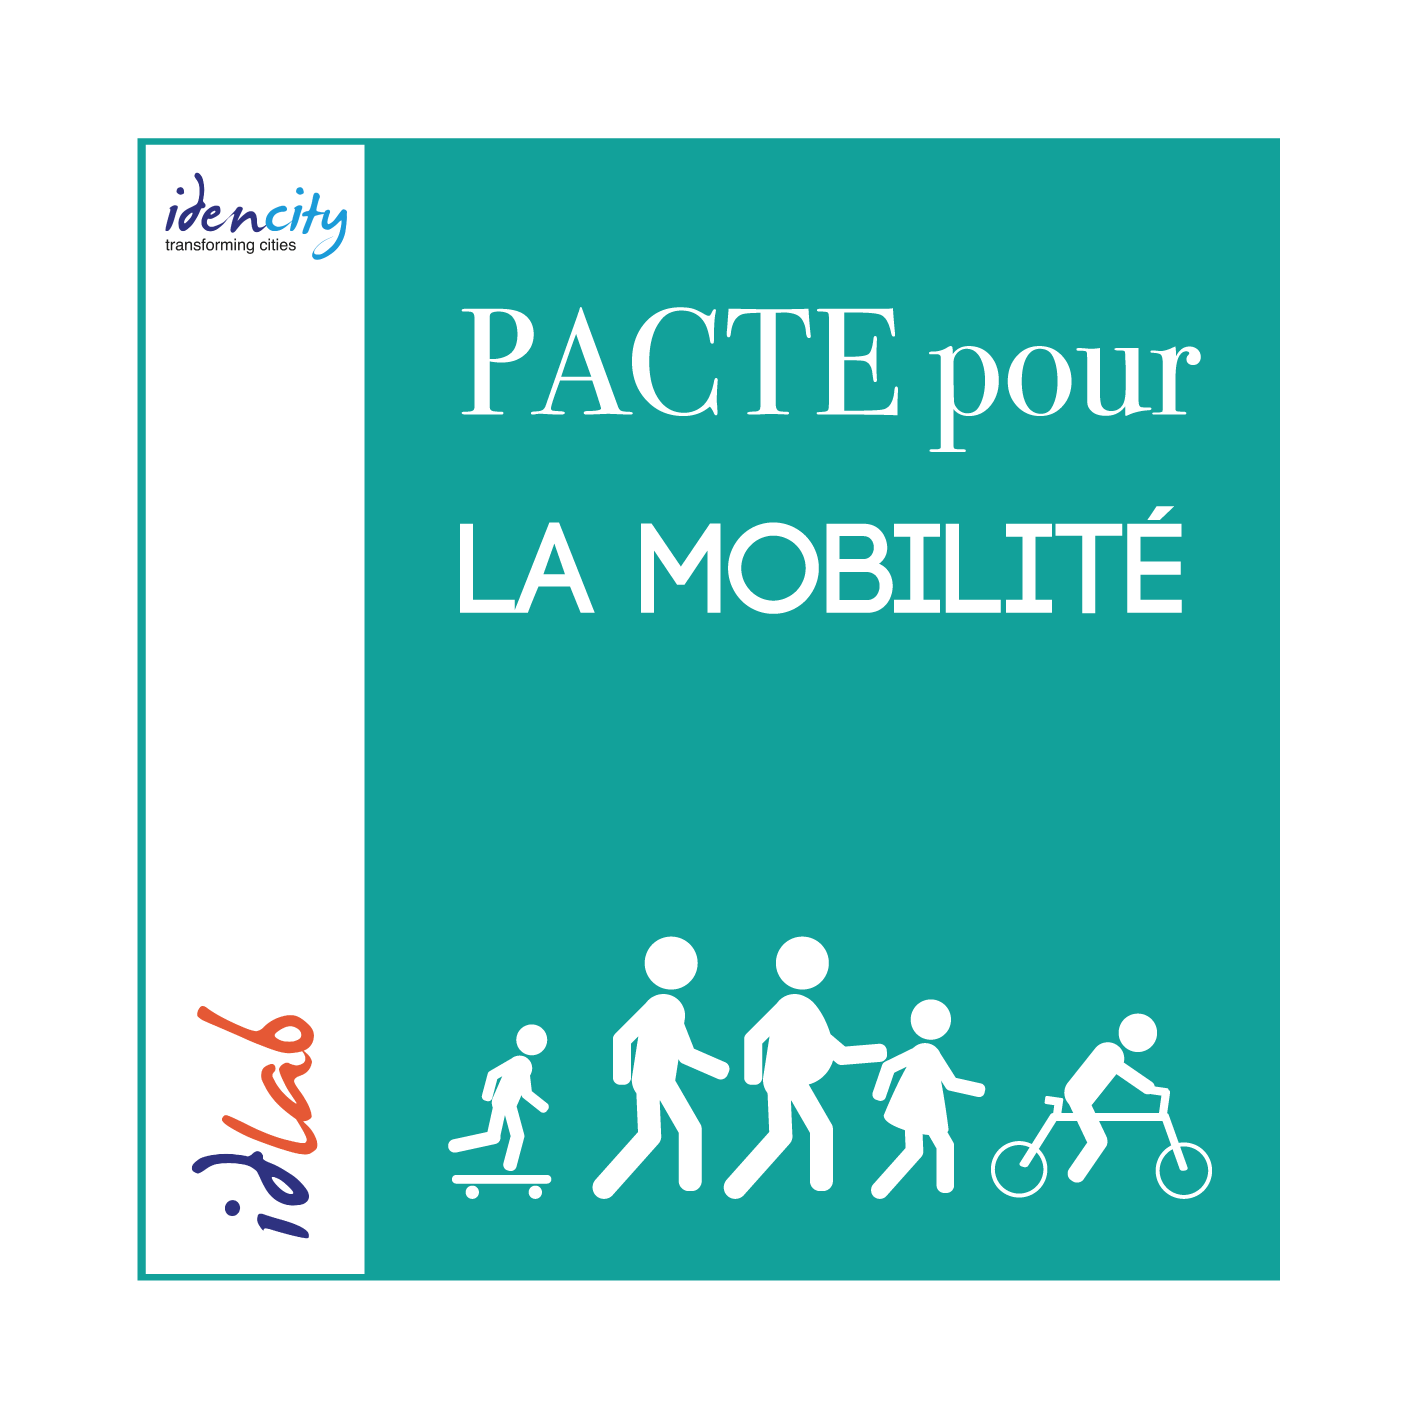 Pacte pour la mobilite - Idencity